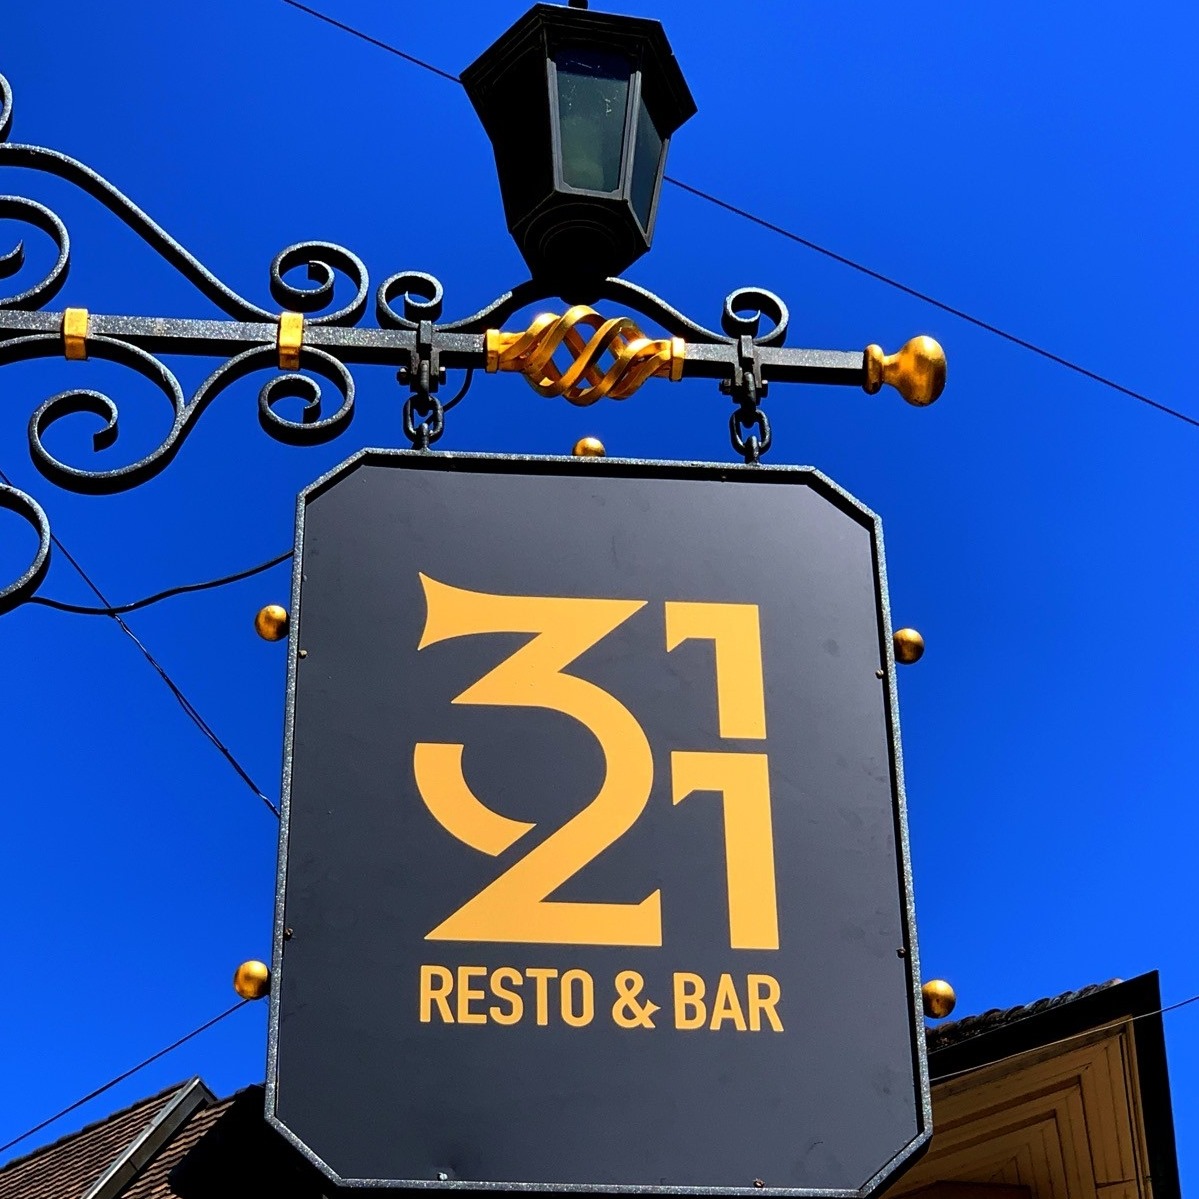 3121 Resto Bar